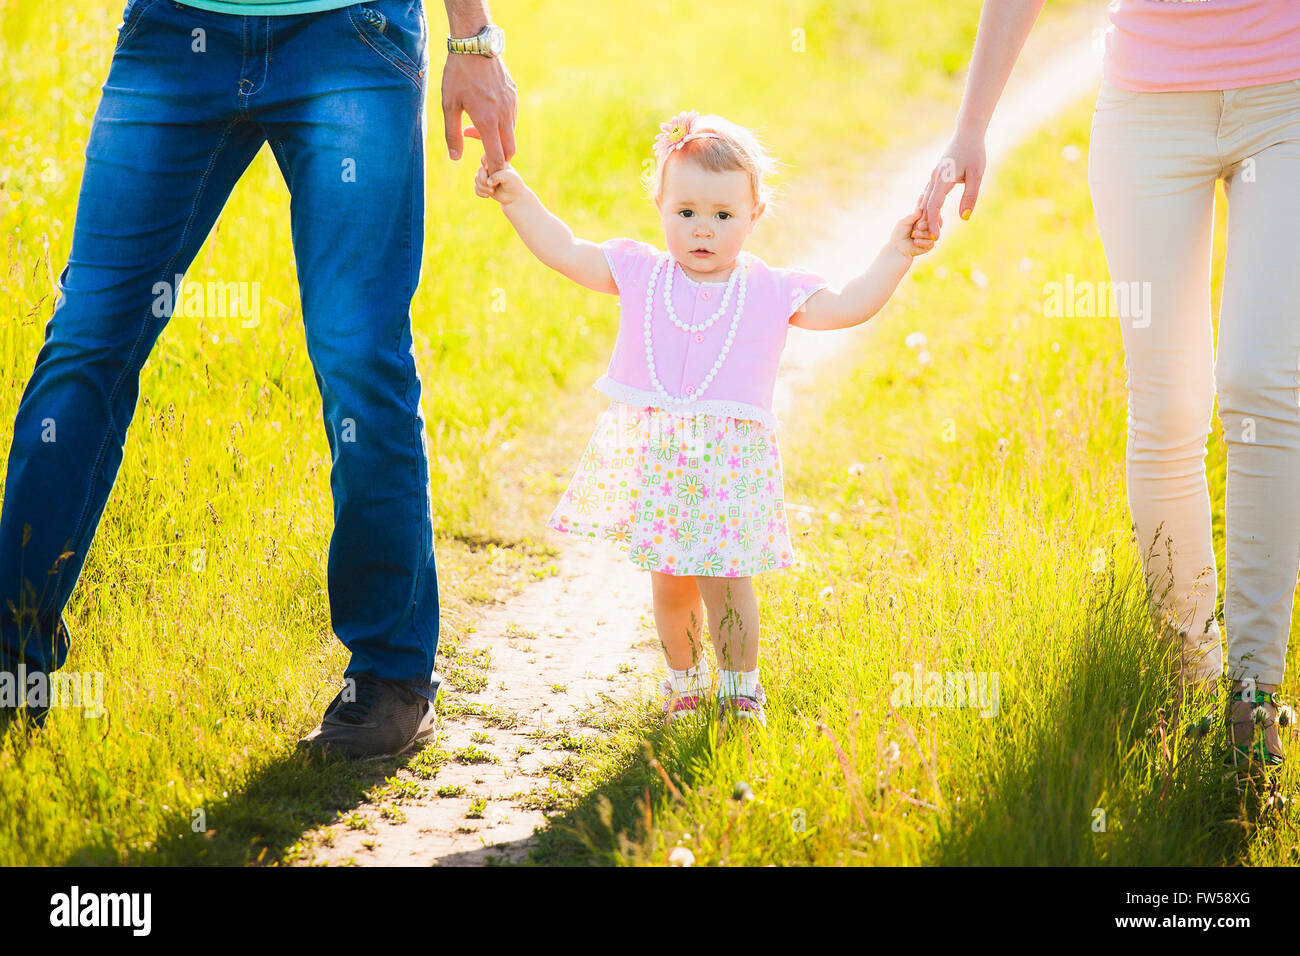 Piccola Figlia Per Mano Di Mamma E Papa Ritratto Di Famiglia Felice Foto Stock Alamy